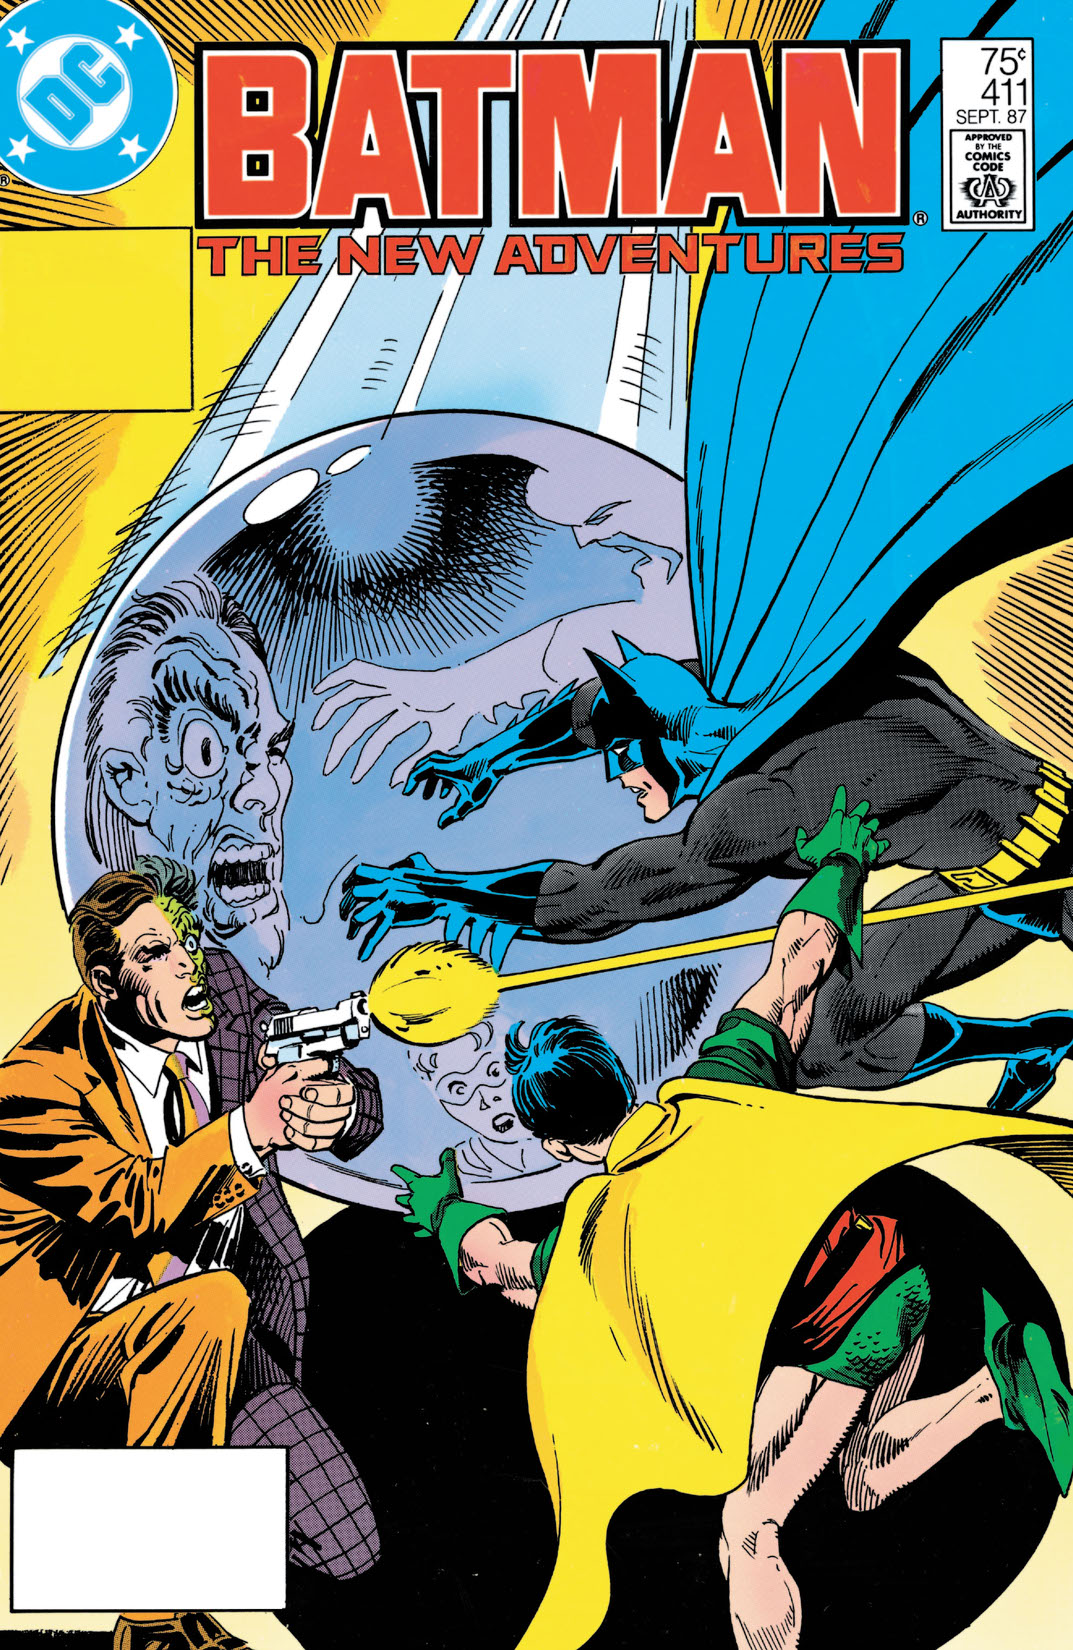 Batman (1940-) #411 preview images